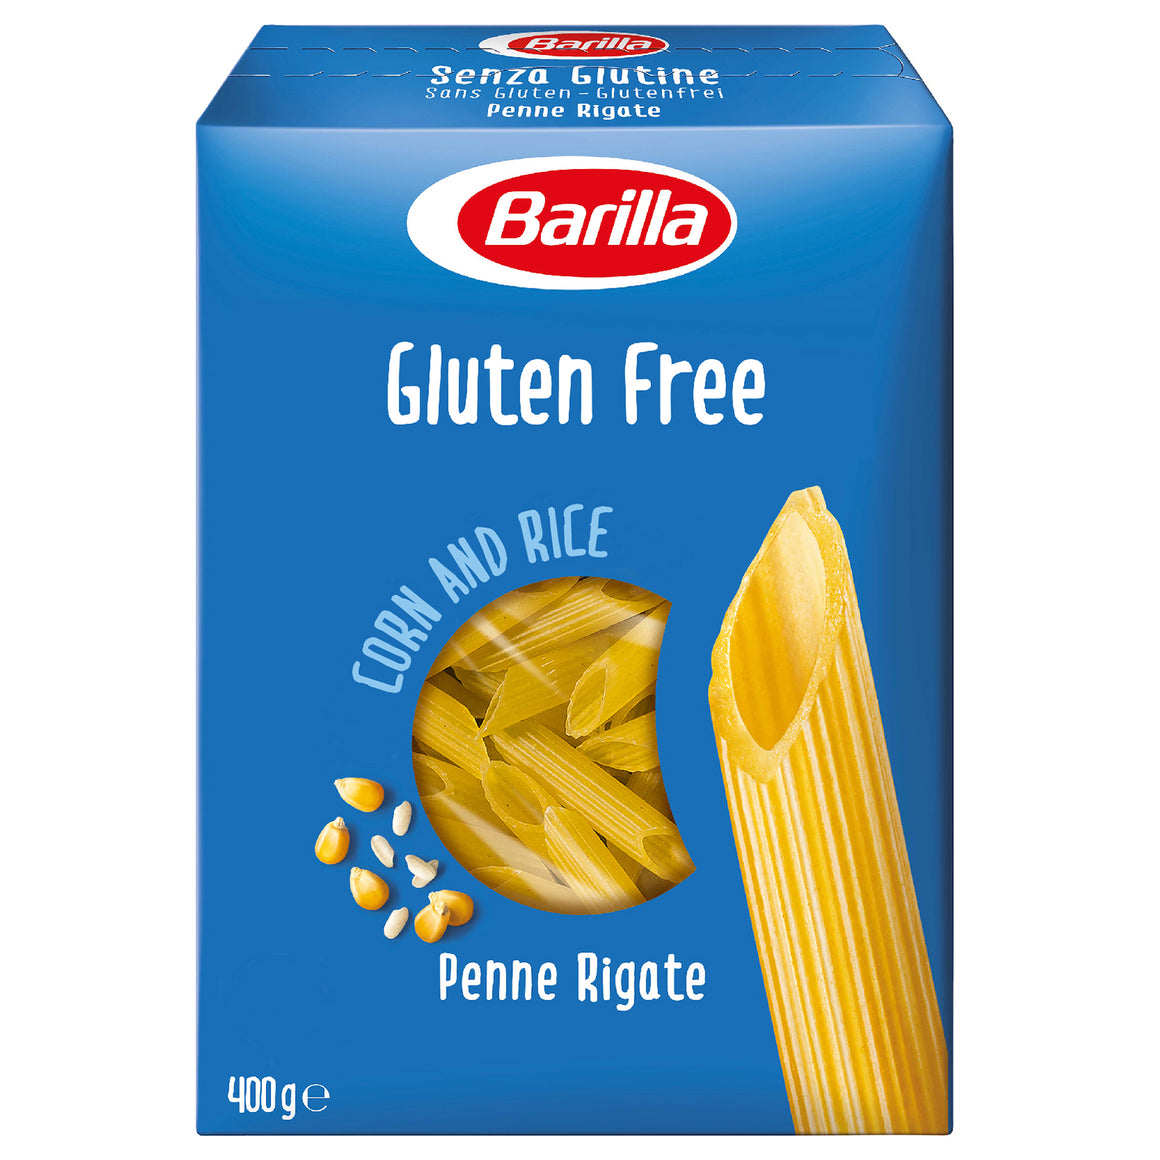 Barilla Pasta Penne Rigate Gluten Free 400g